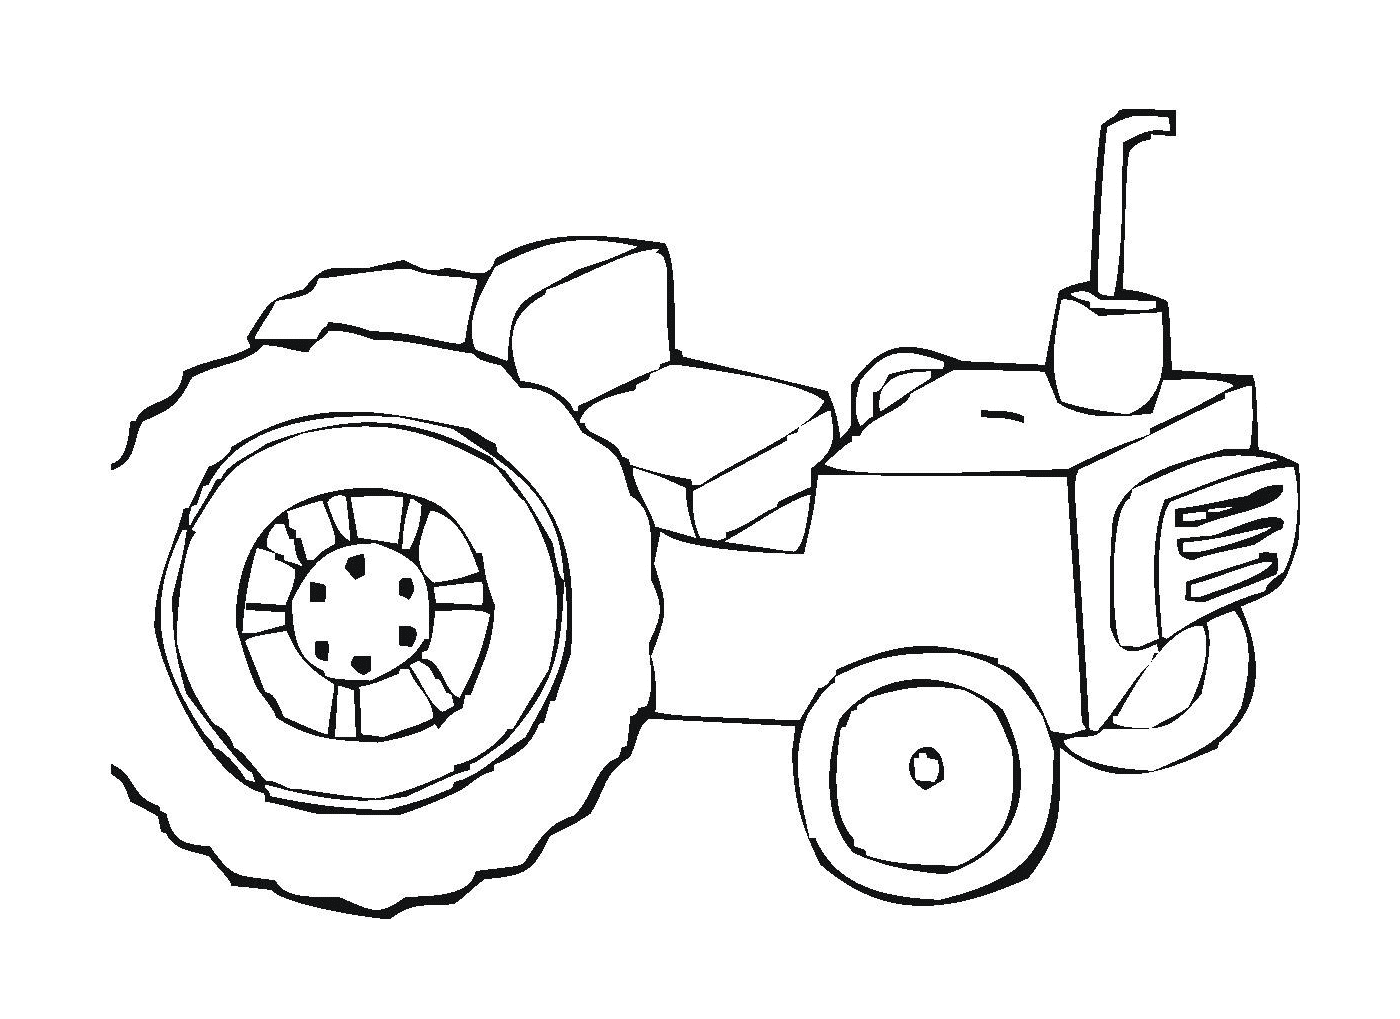   Vieux tracteur dessiné noir 